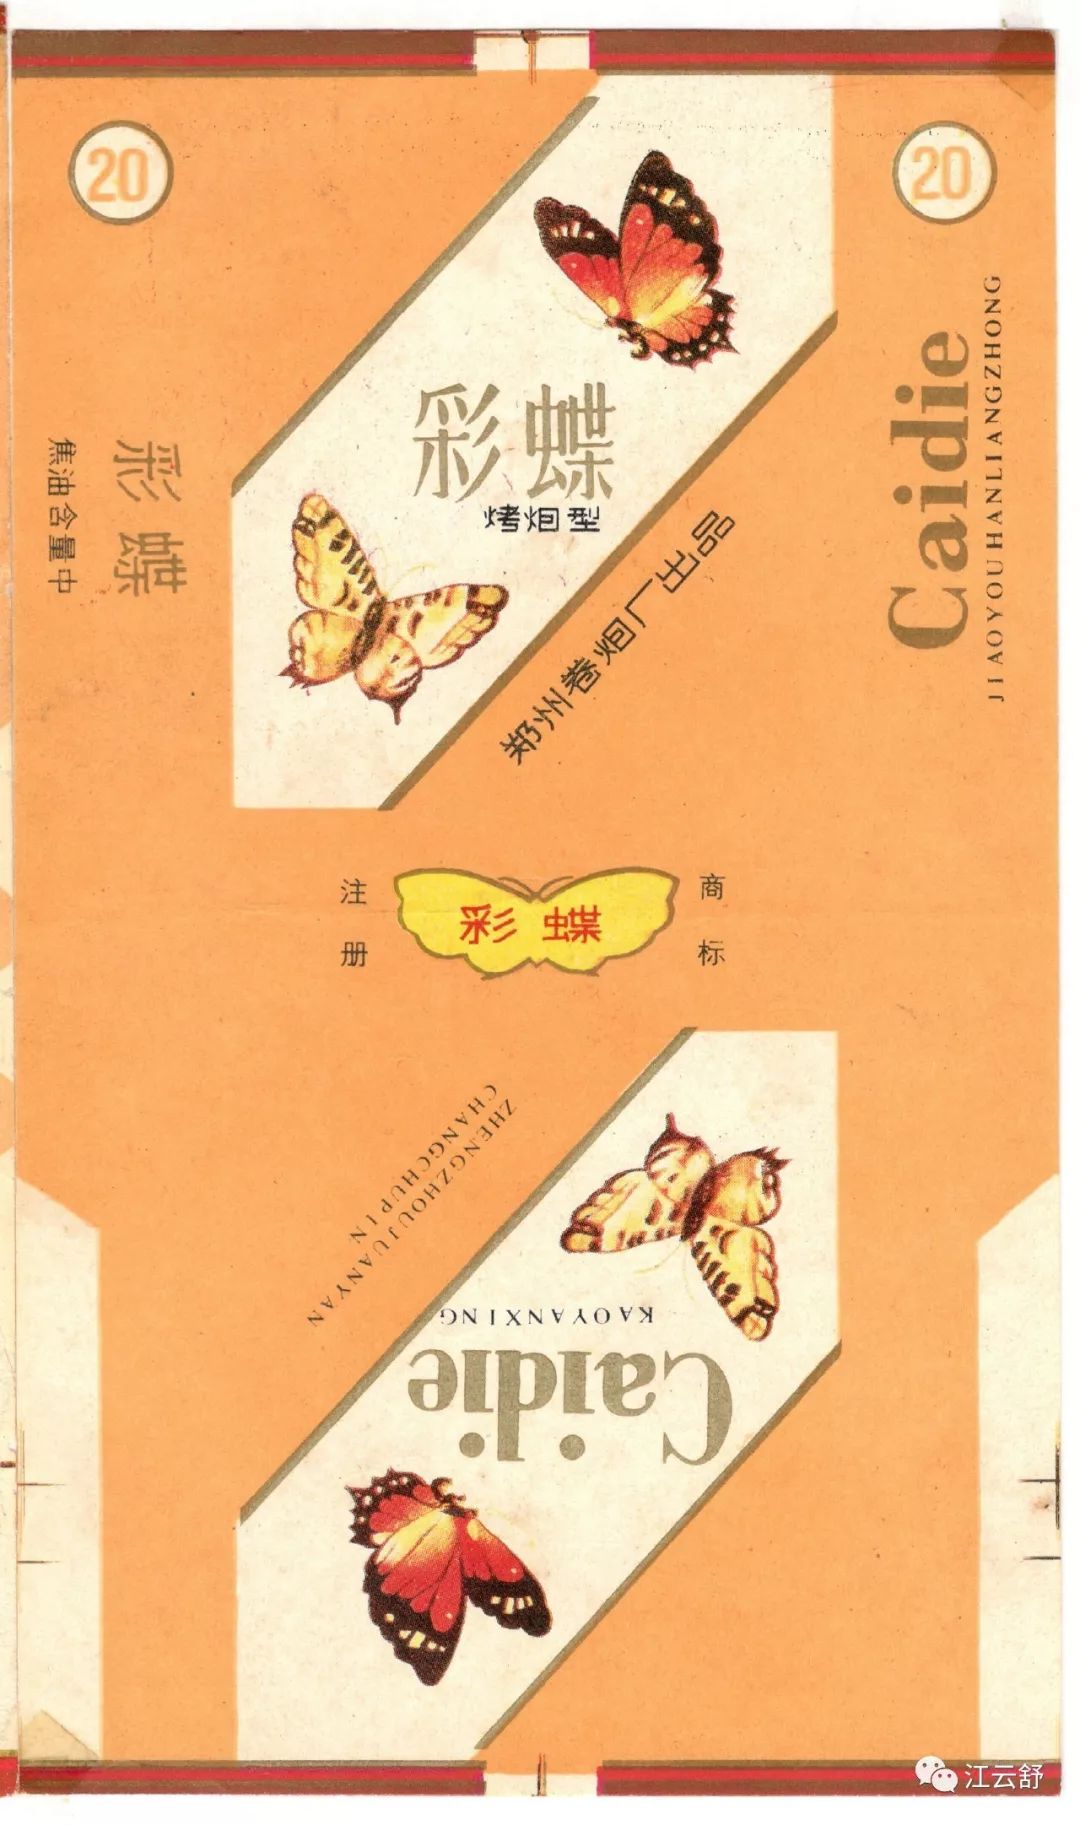 收藏烟标名称：彩蝶 彩凤 曹州 草海 瓷都 丛台 翠竹